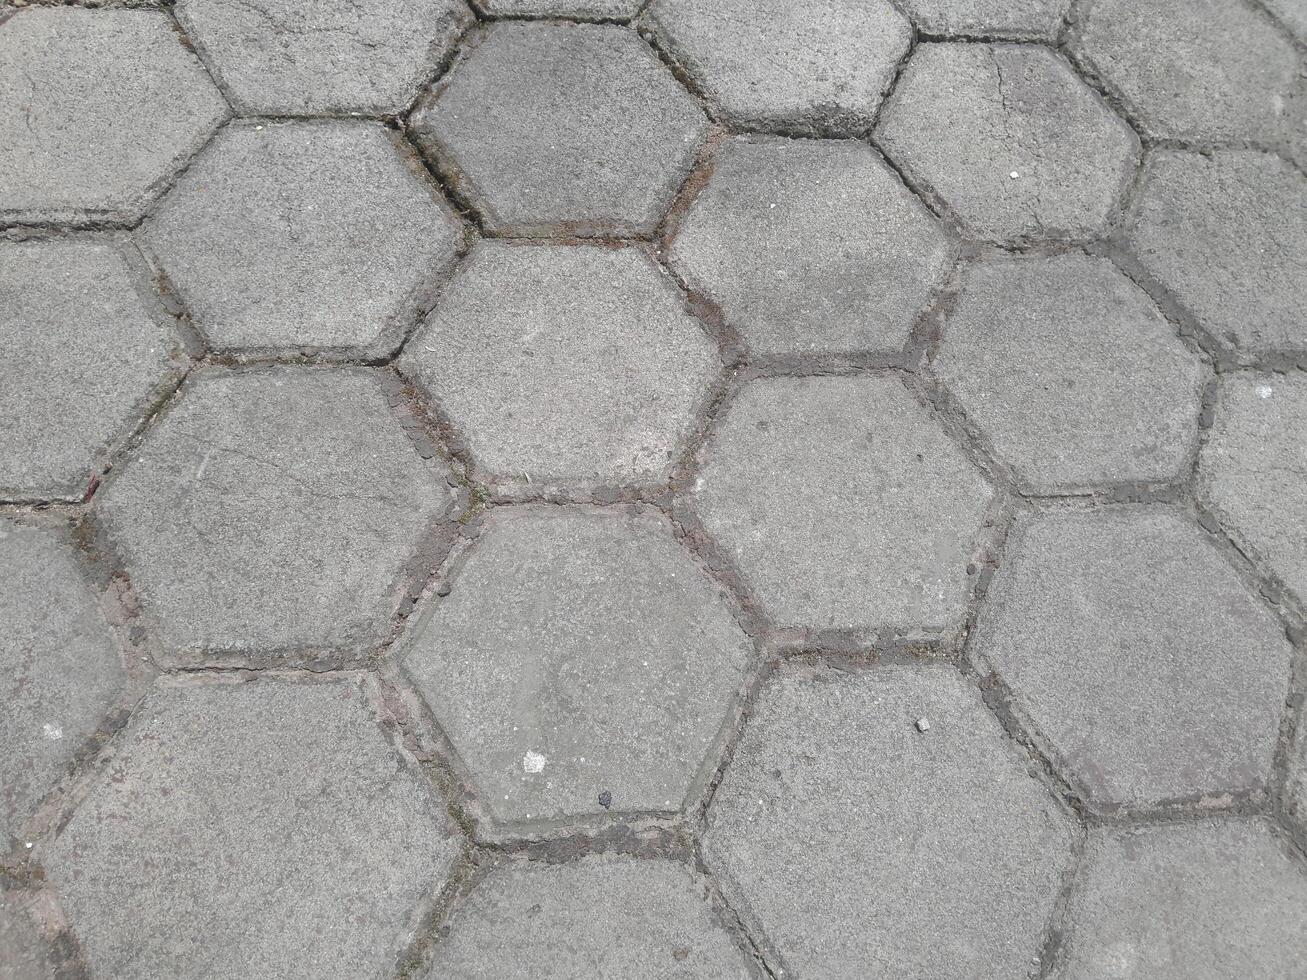 Foto av tegel gård golv. perfekt för tapet, bakgrund, baner, webb, reklam